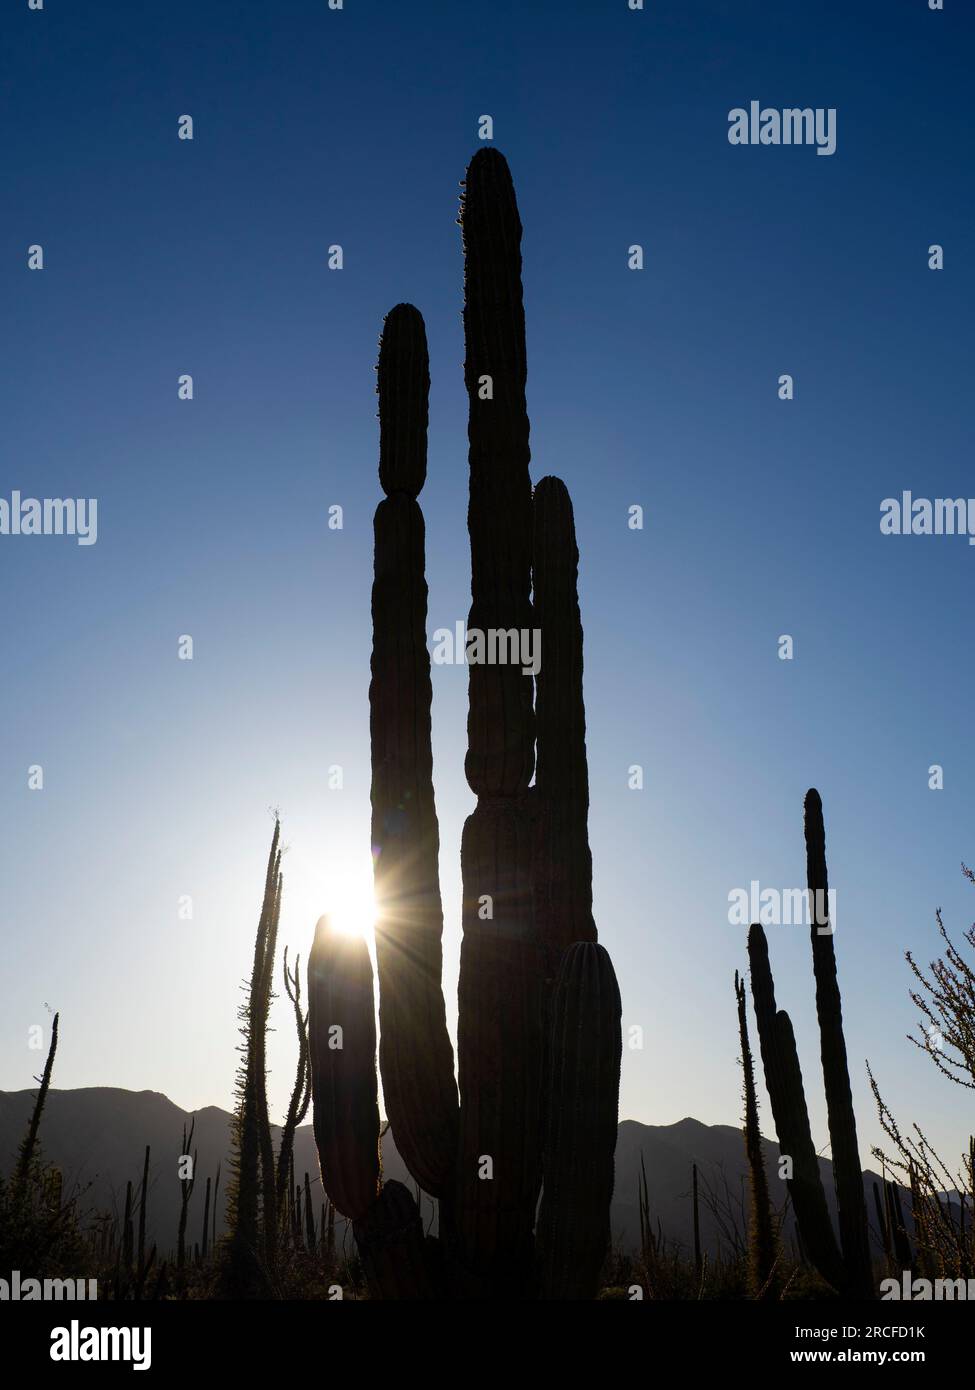 Cardon cactus, Pachycereus pringlei, avec soleil couchant à Bahia de los Angeles, Basse Californie, Mexique. Banque D'Images